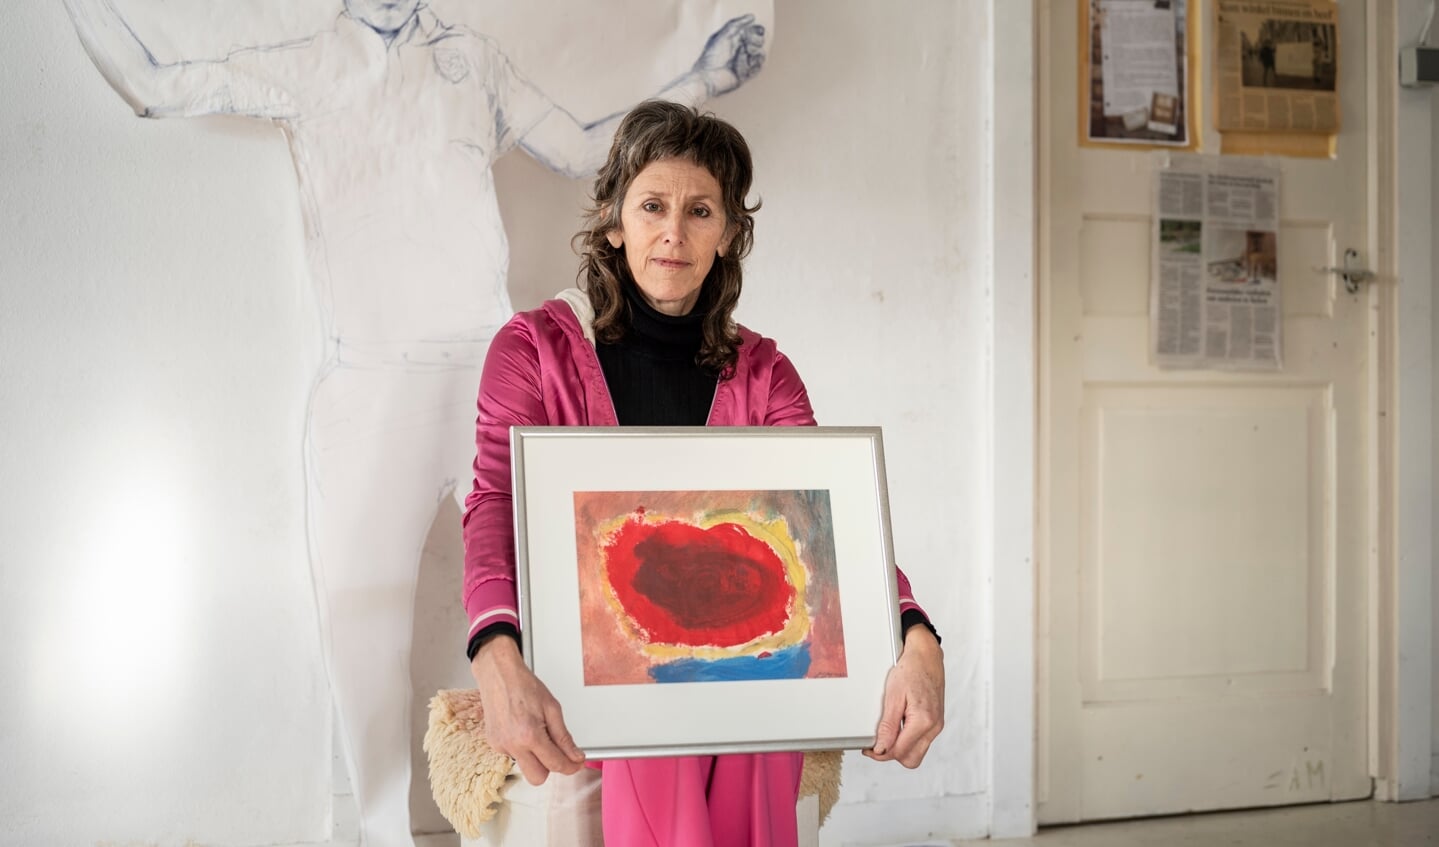 Jeannette Eisses met het schilderij dat ze twintig jaar geleden maakte: een rode wolk - die een baarmoeder verbeeldt - met daaromheen blauw, roze, geel en grijs.